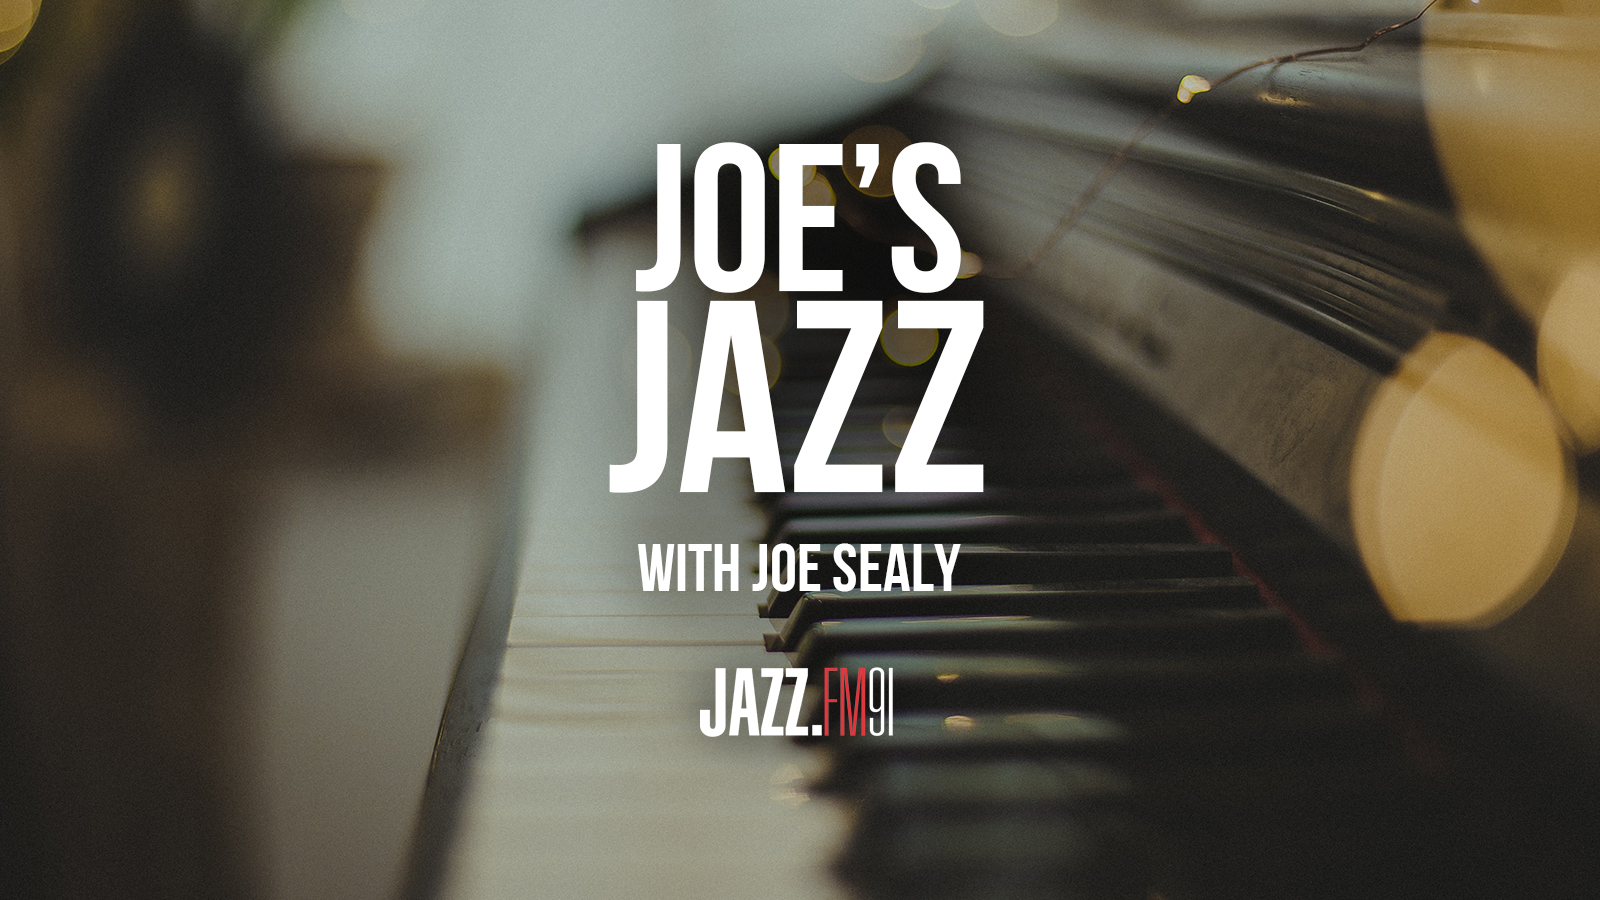 Joe's Jazz